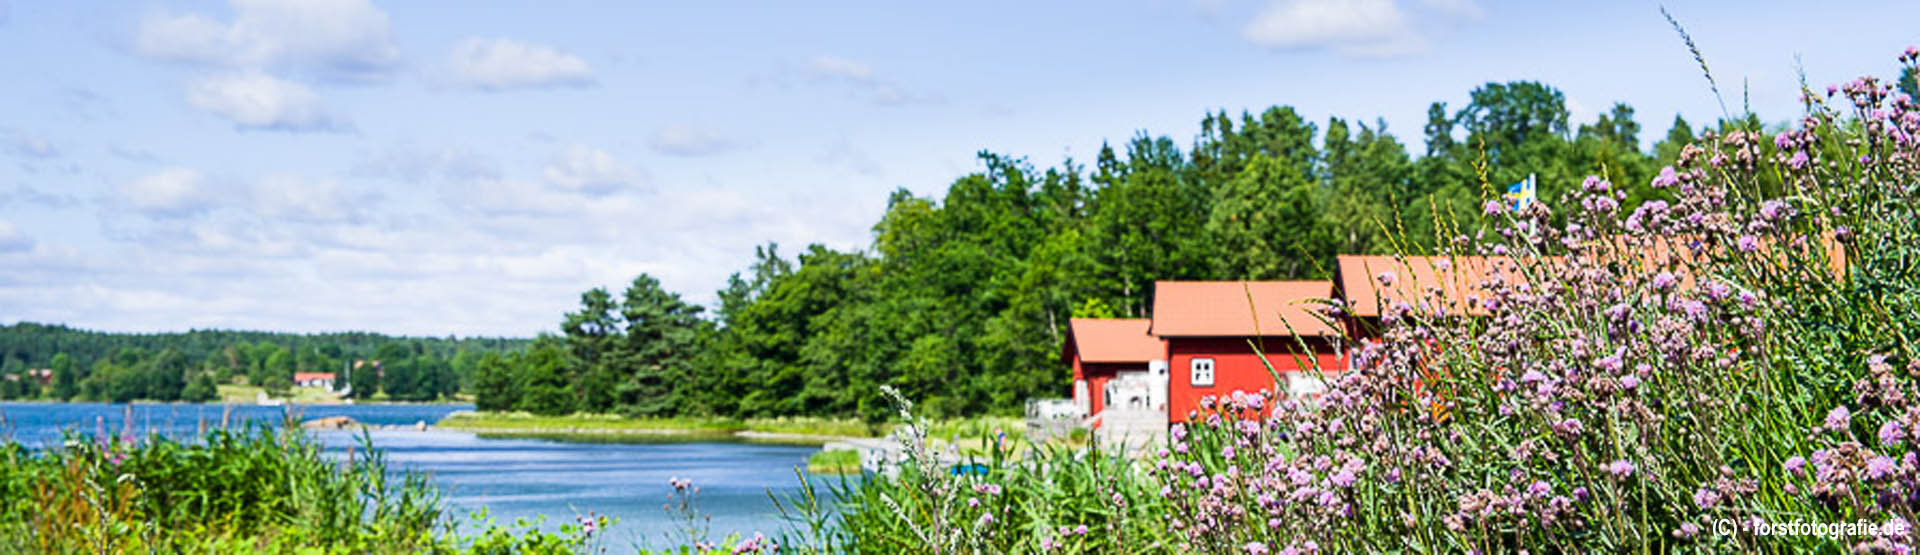 Schweden Pauschalurlaub im Sommer zwischen Meer, Seen, Wälder & roten Häusern